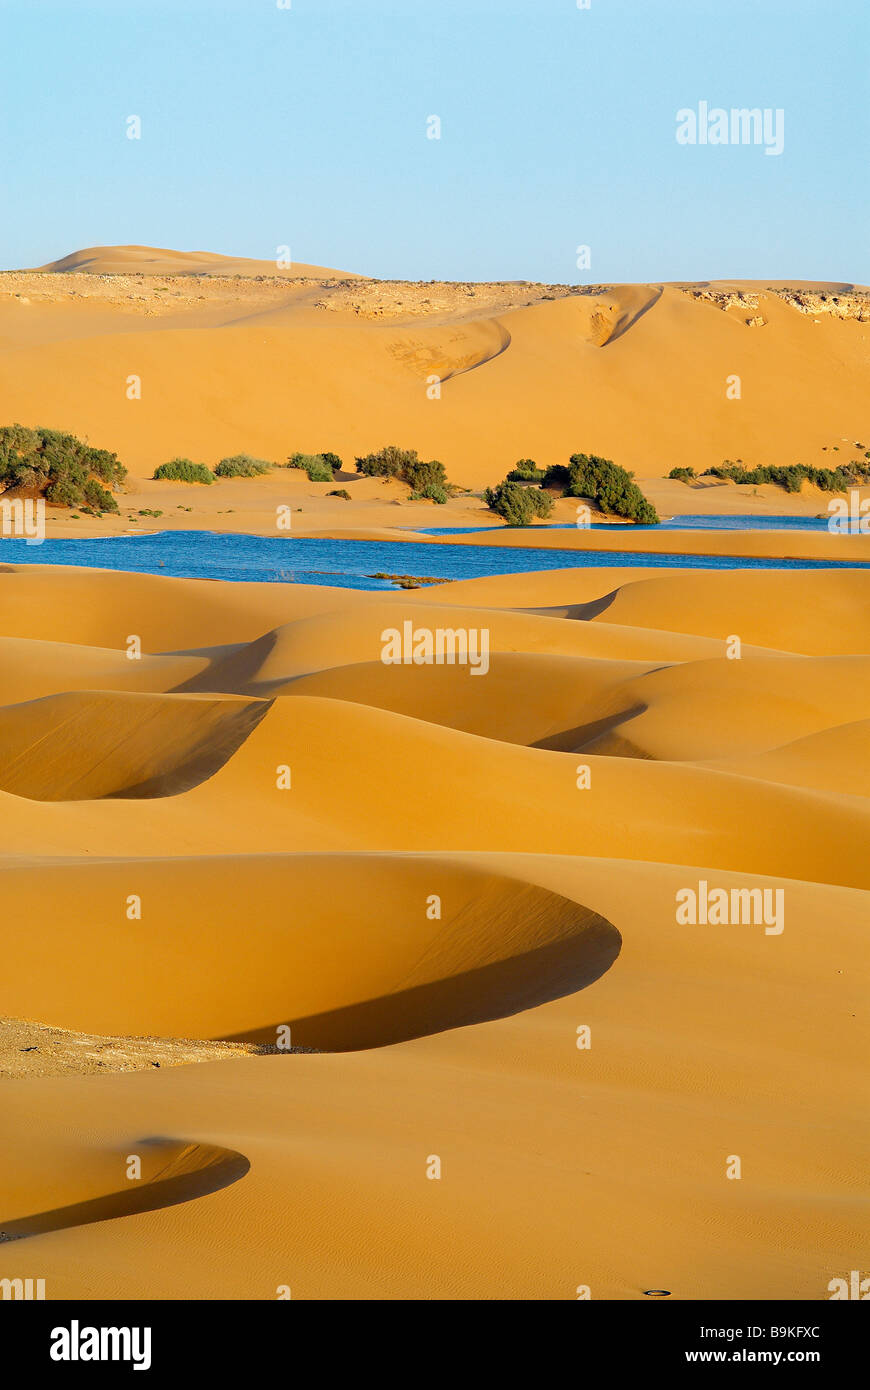 Le Maroc, dans le sud du Maroc, région de Laayoune, désert et laguna (ancien Sahara espagnol) Banque D'Images